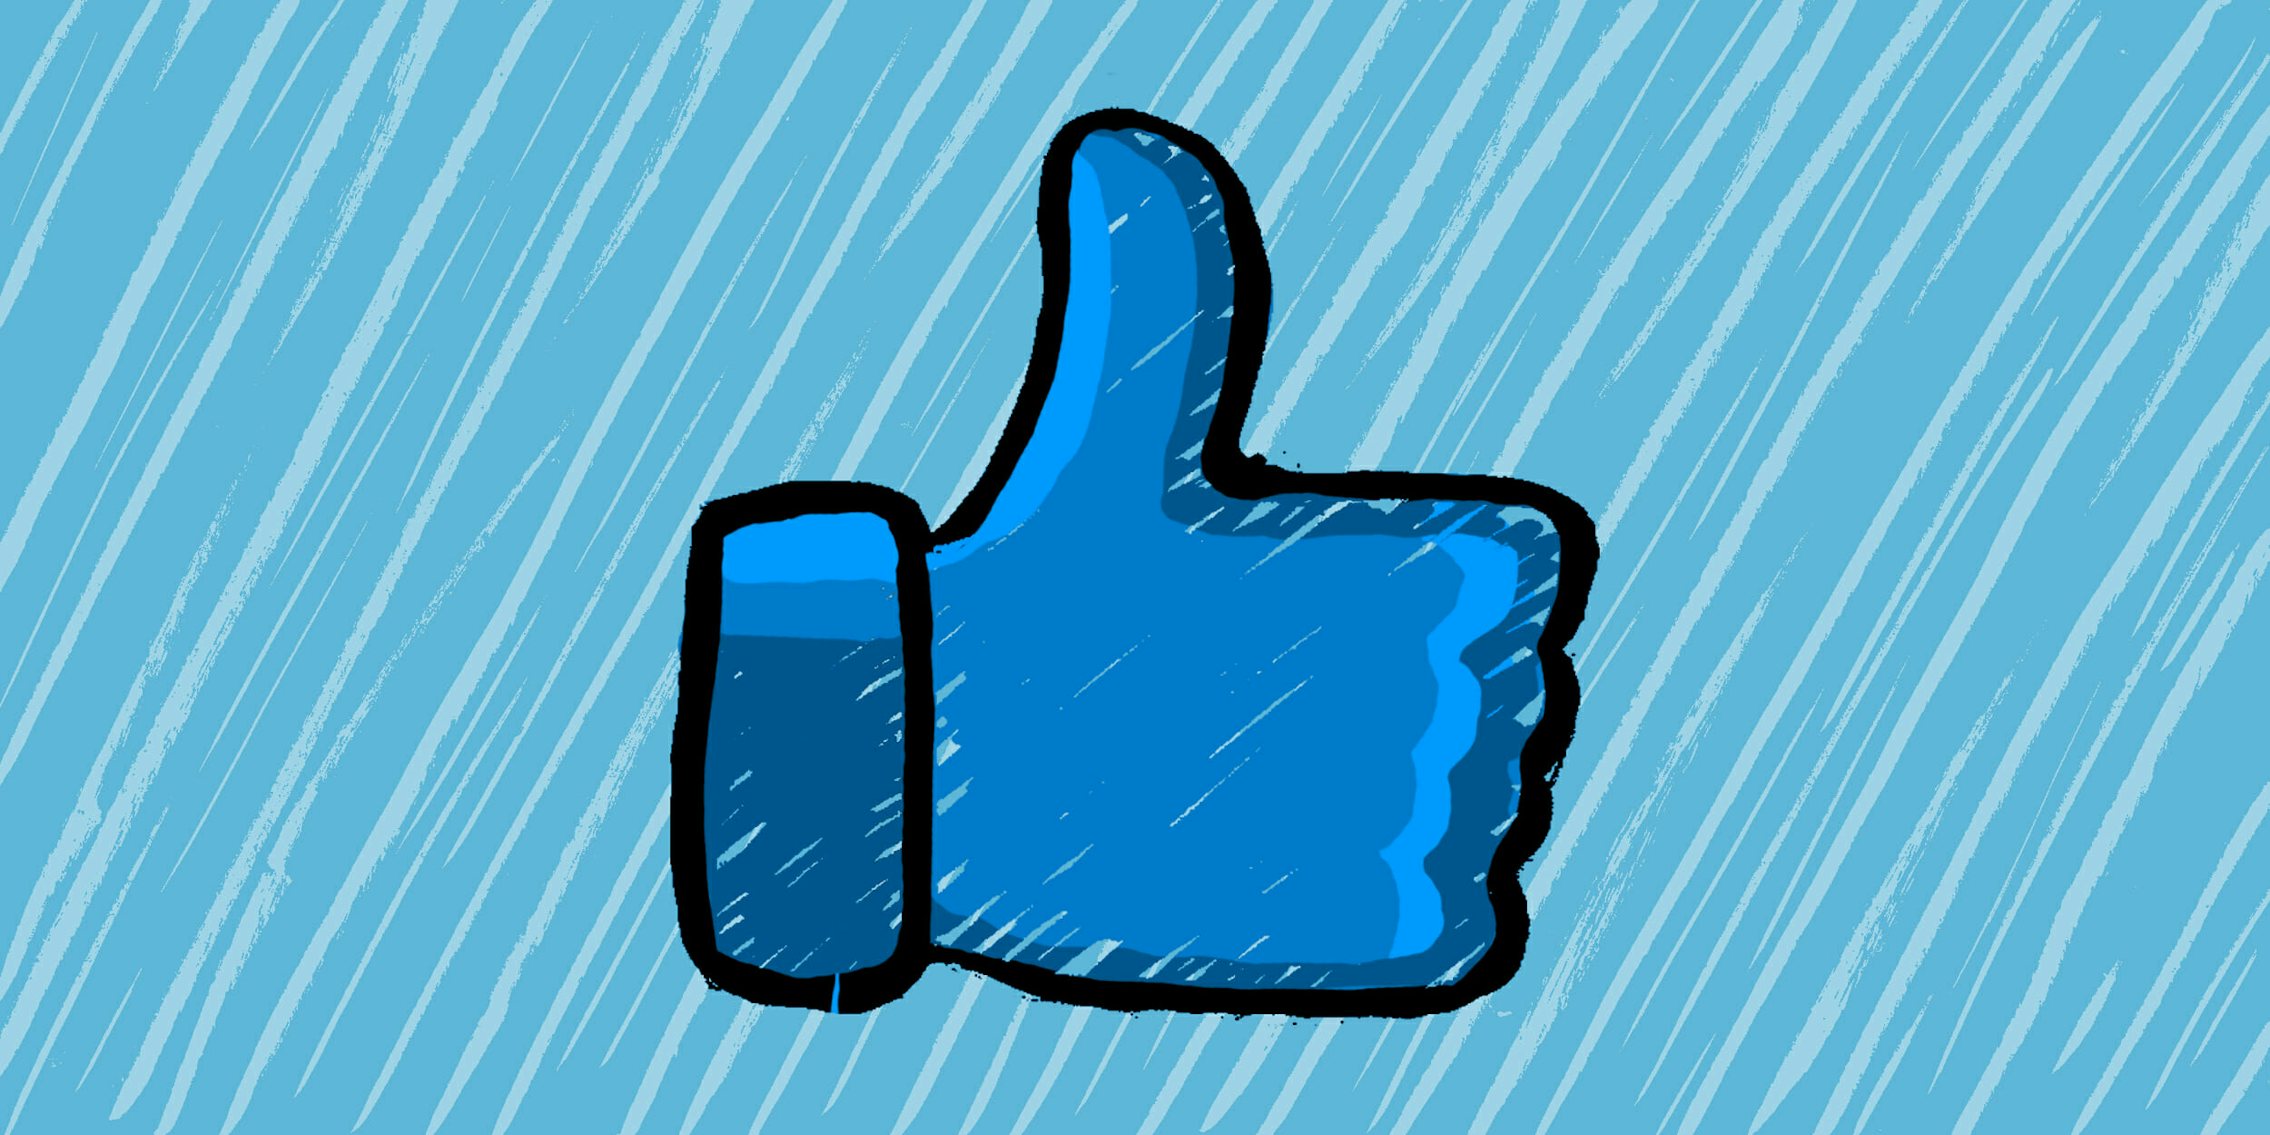 facebook logo in rain